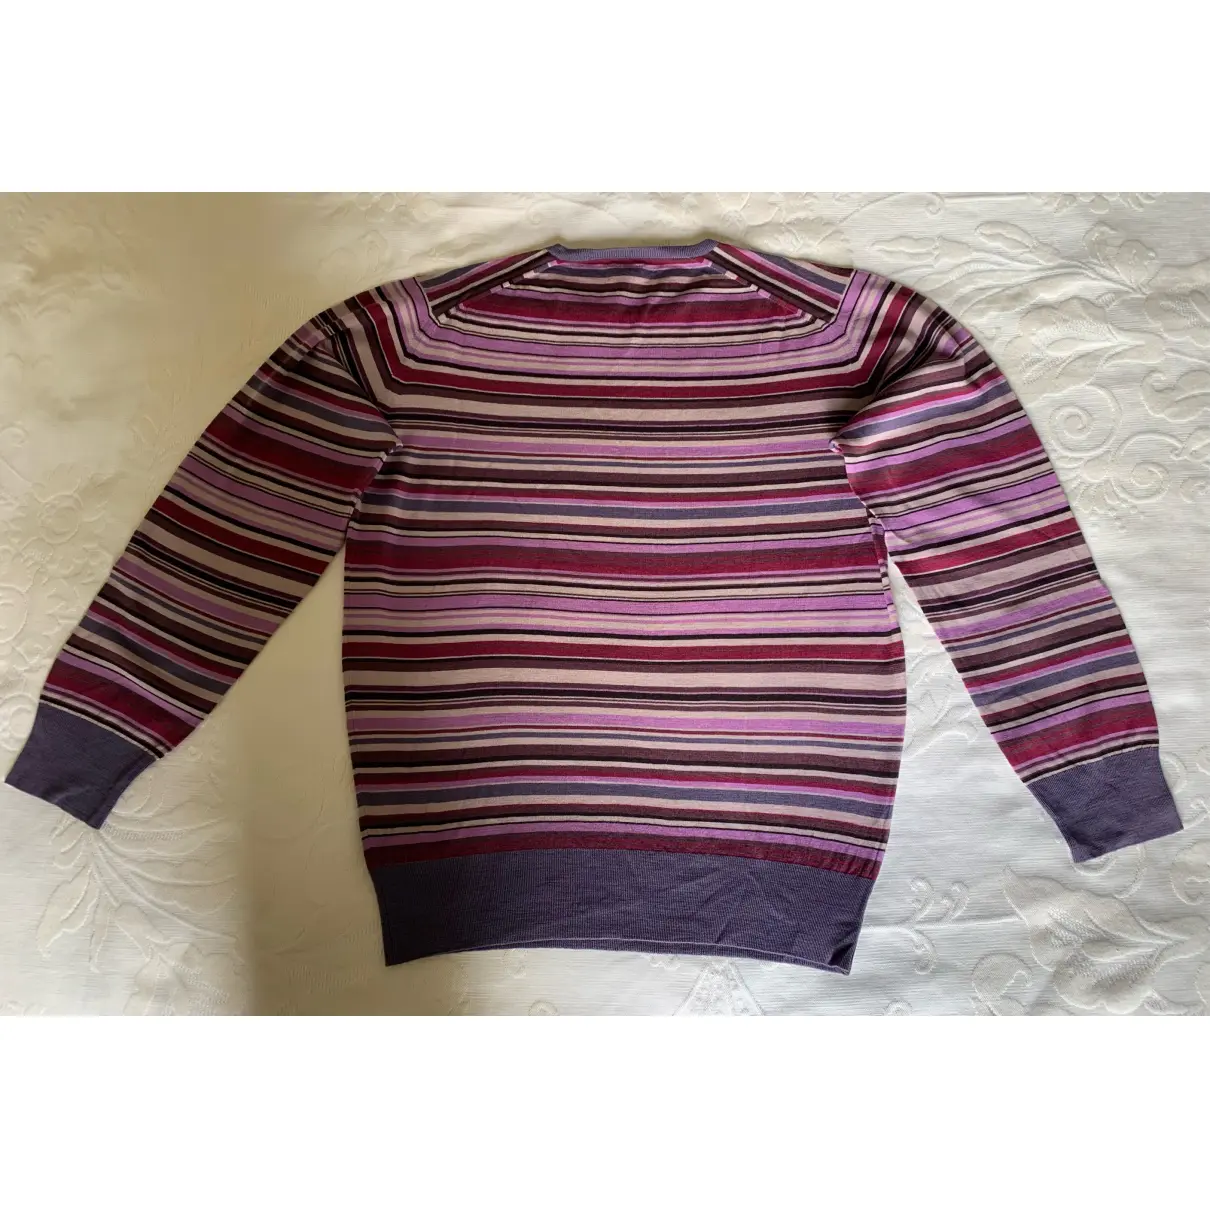 Wool knitwear & sweatshirt Paul Smith